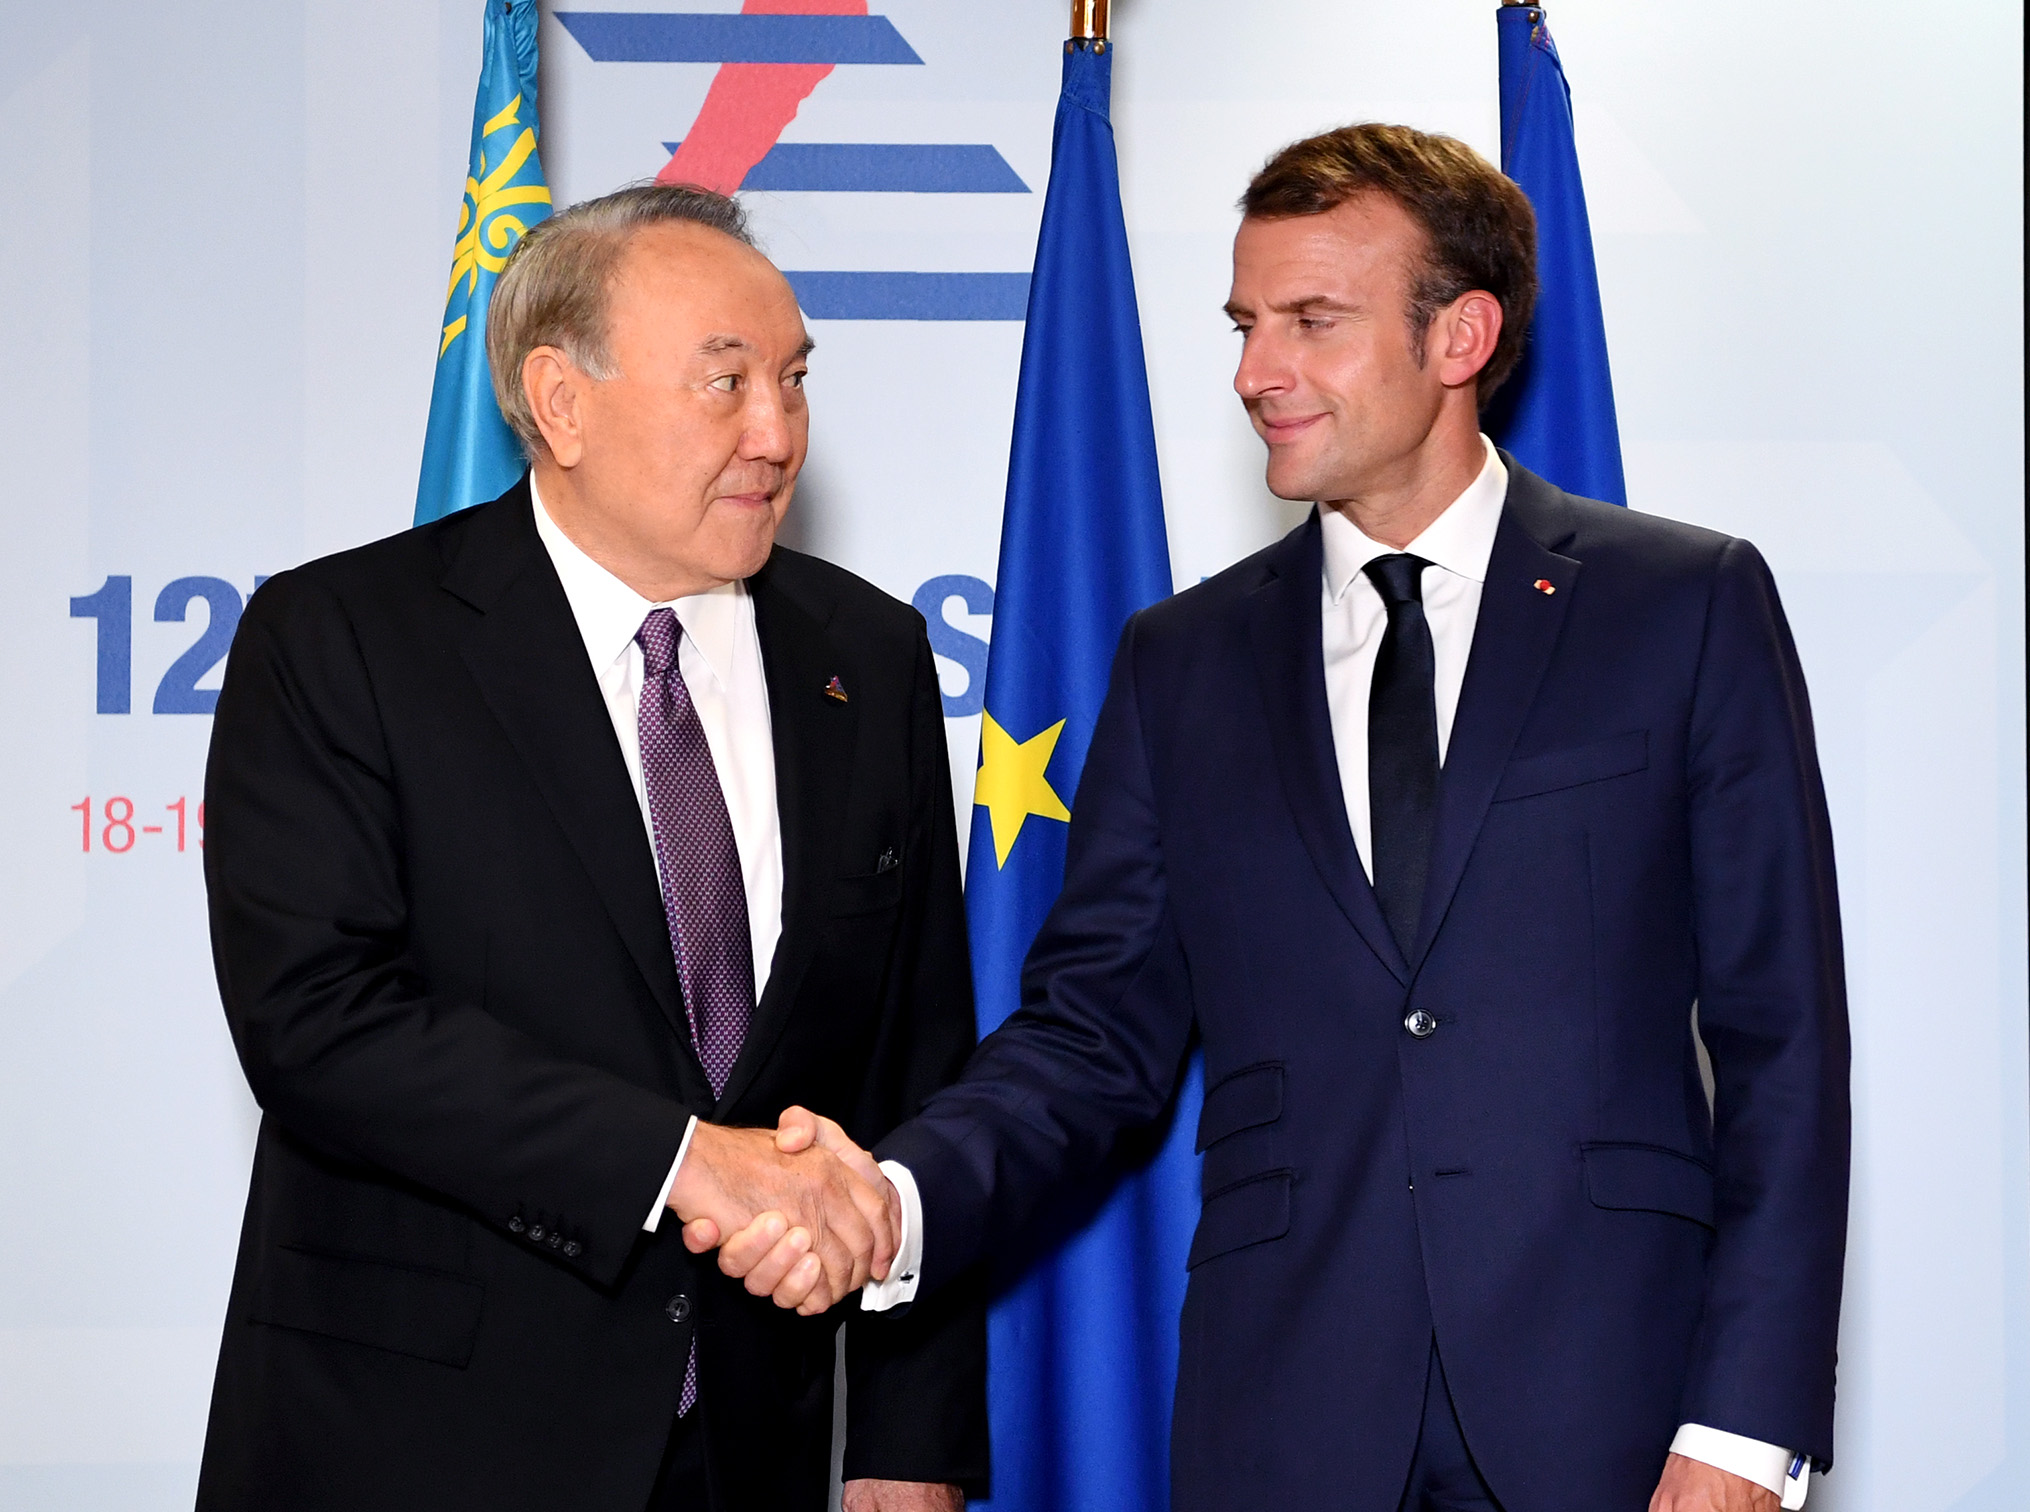 Nursultan Nazarbayev meets with Emmanuel Macron